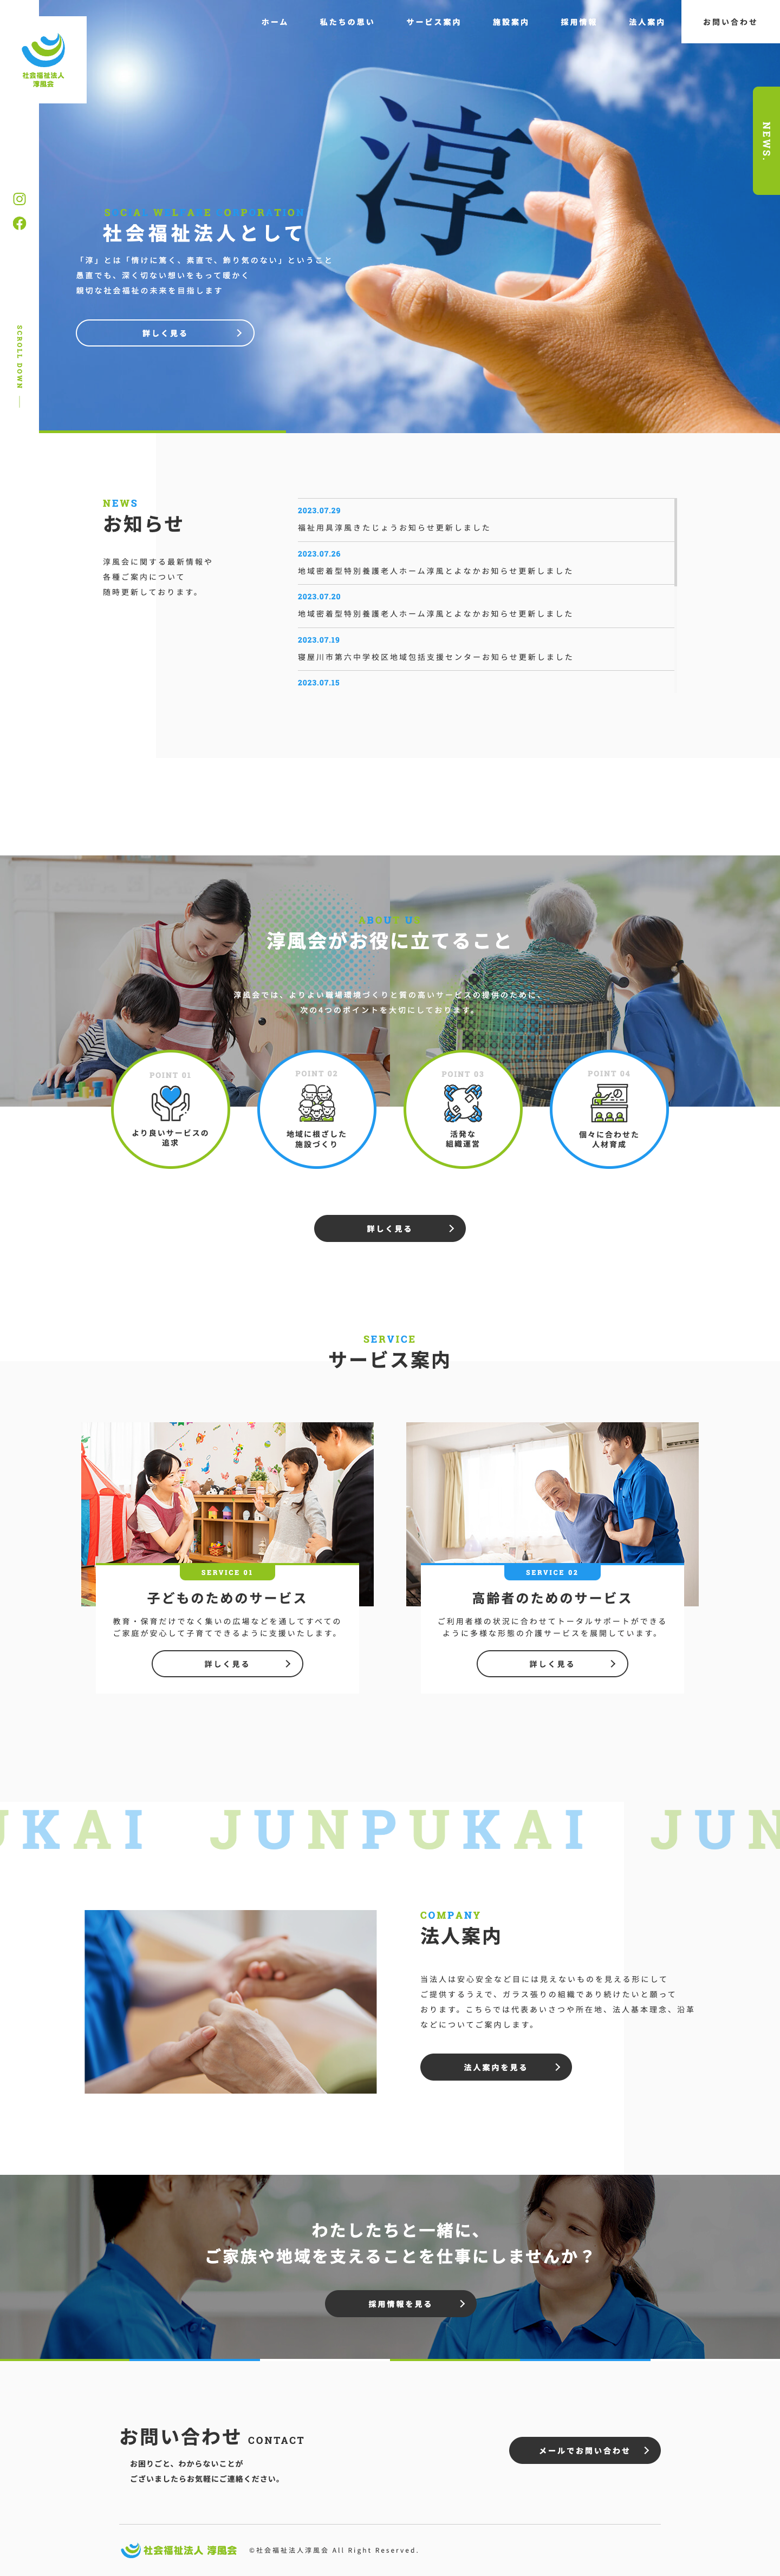 社会福祉法人淳風会 オフィシャルサイト：大阪のホームページ制作会社アップポイントの制作例